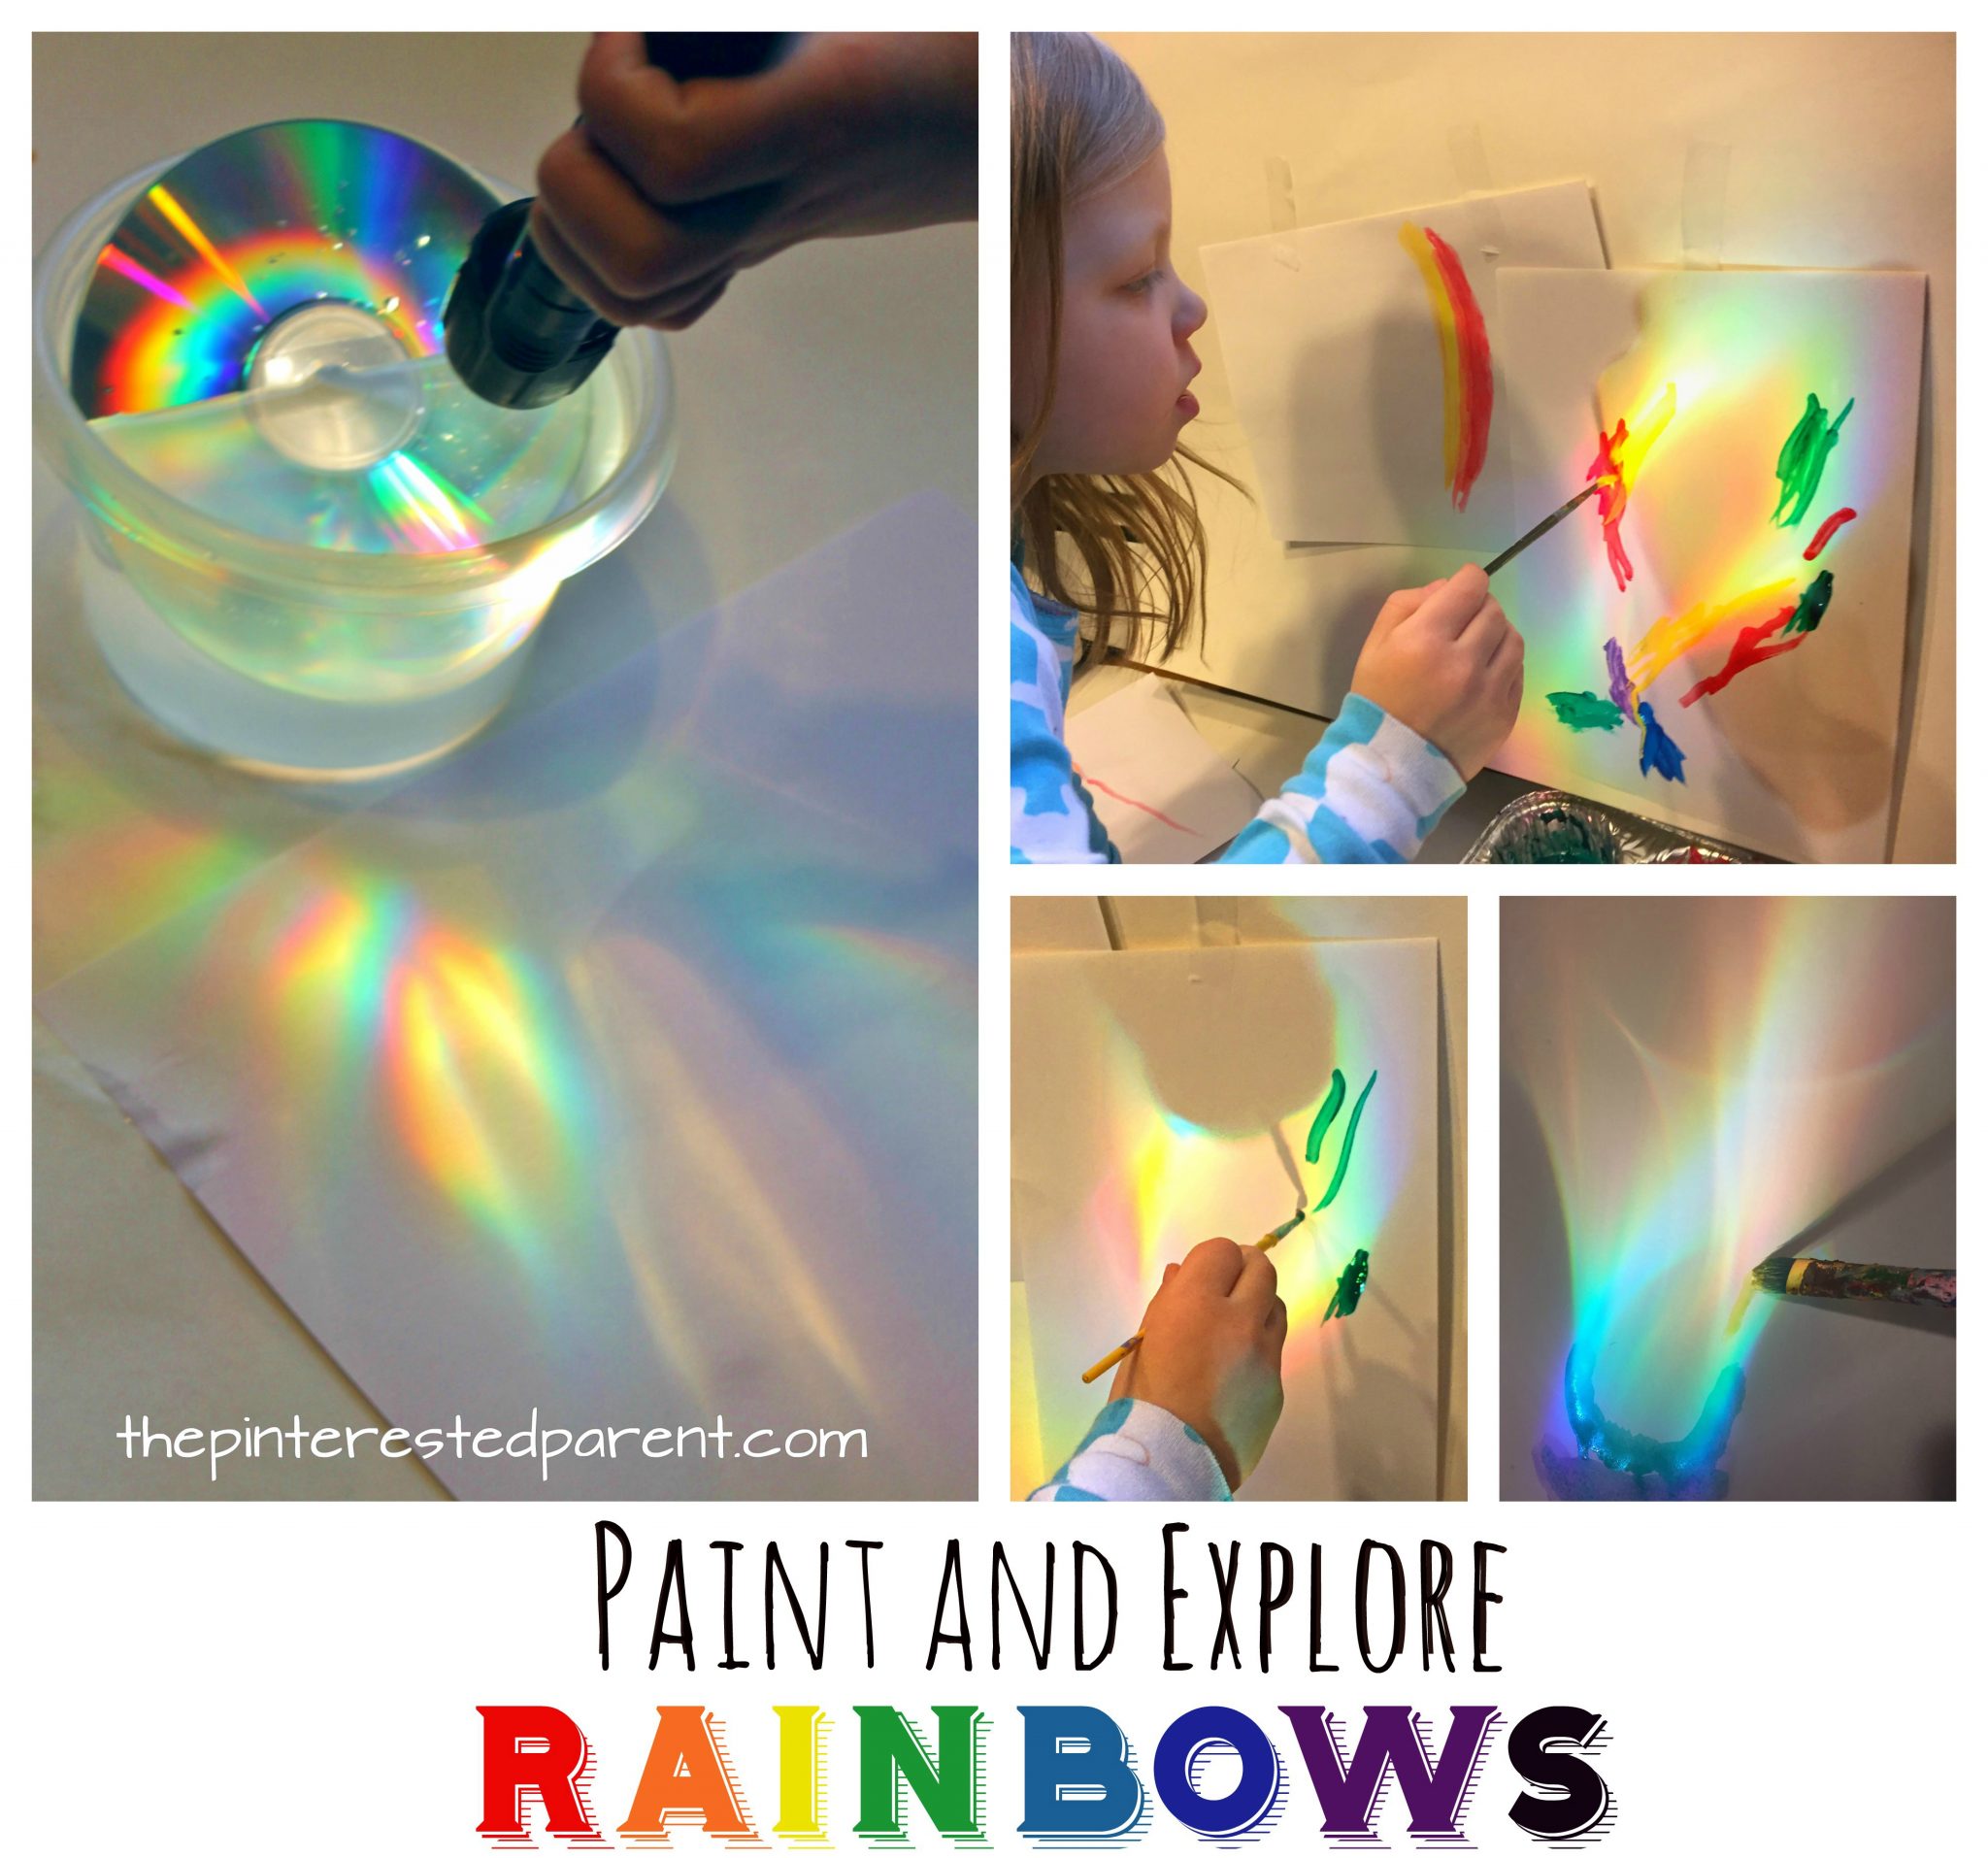 Make, Explore, Paint Rainbows – The Pinterested Parent